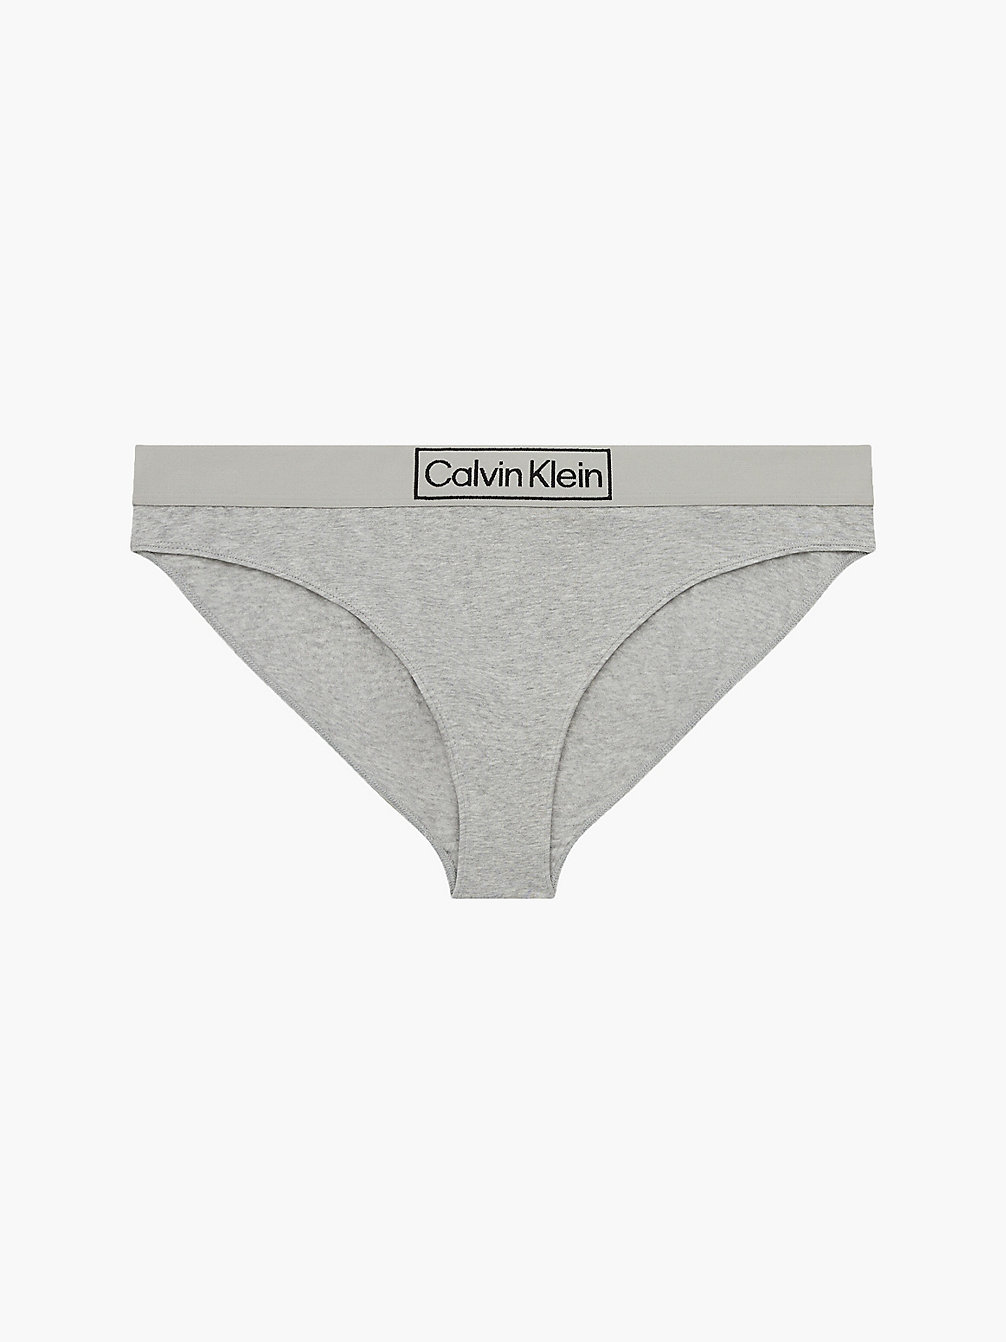 GREY HEATHER Plus Size Bikini Brief - Reimagined Heritage undefined women Calvin Klein